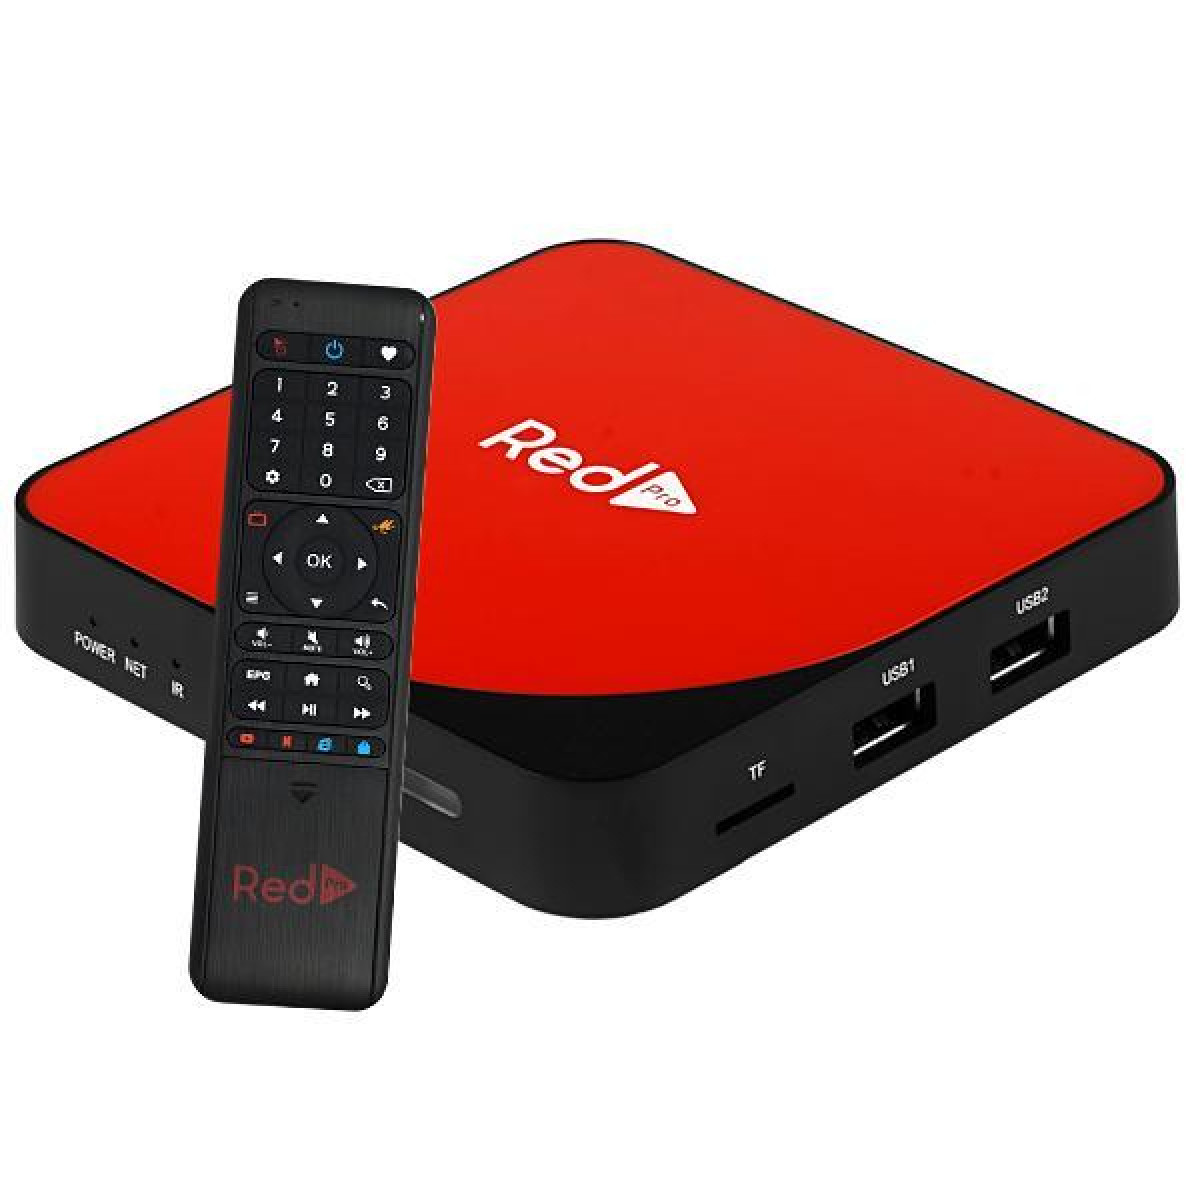 Novo Redstick: poderoso, portátil, premium – RedPlay Oficial